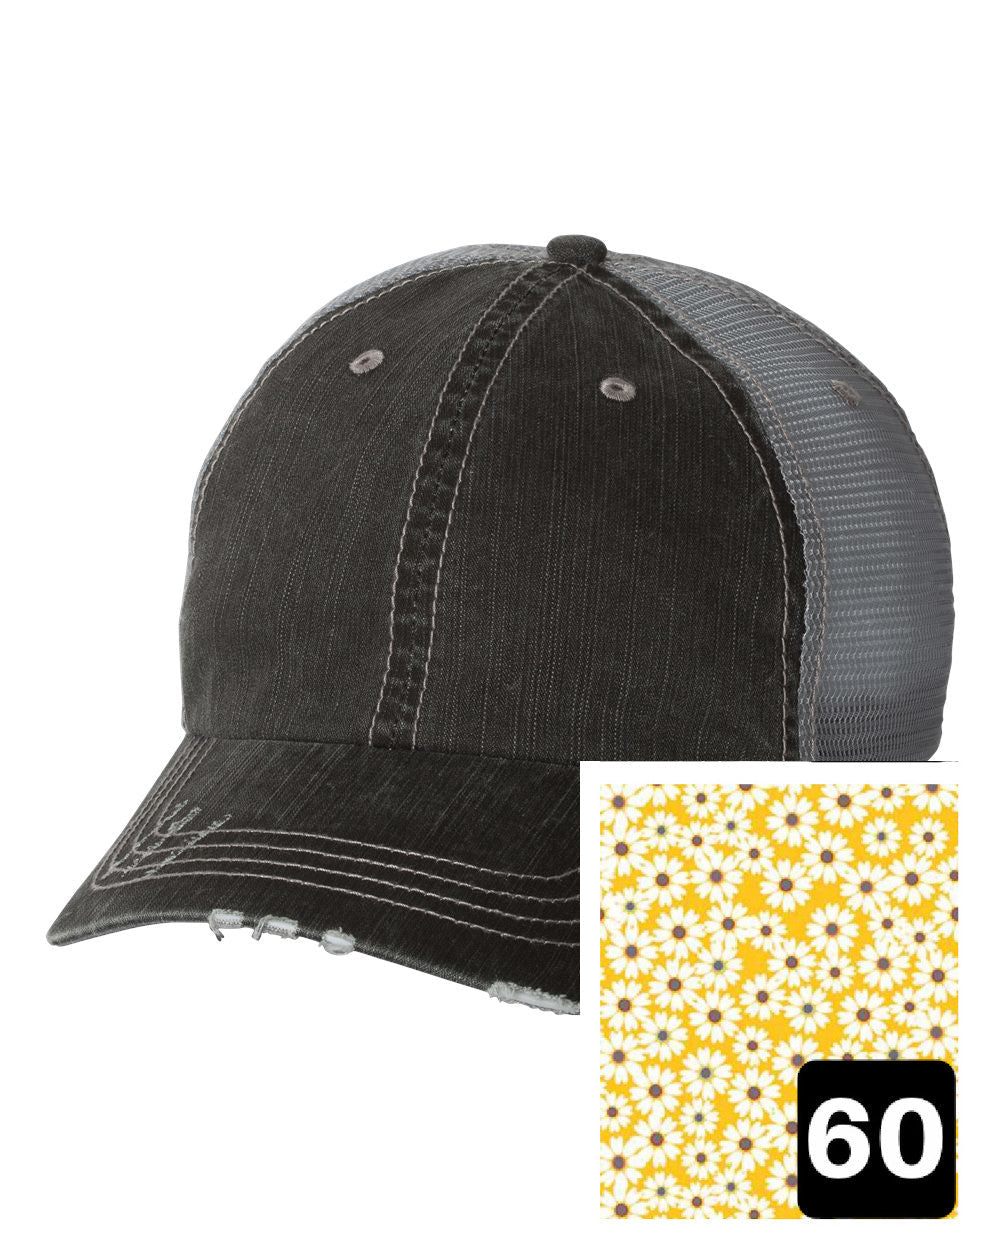 Louisiana Hat | Gray Distressed Trucker Cap | Many Fabric Choices